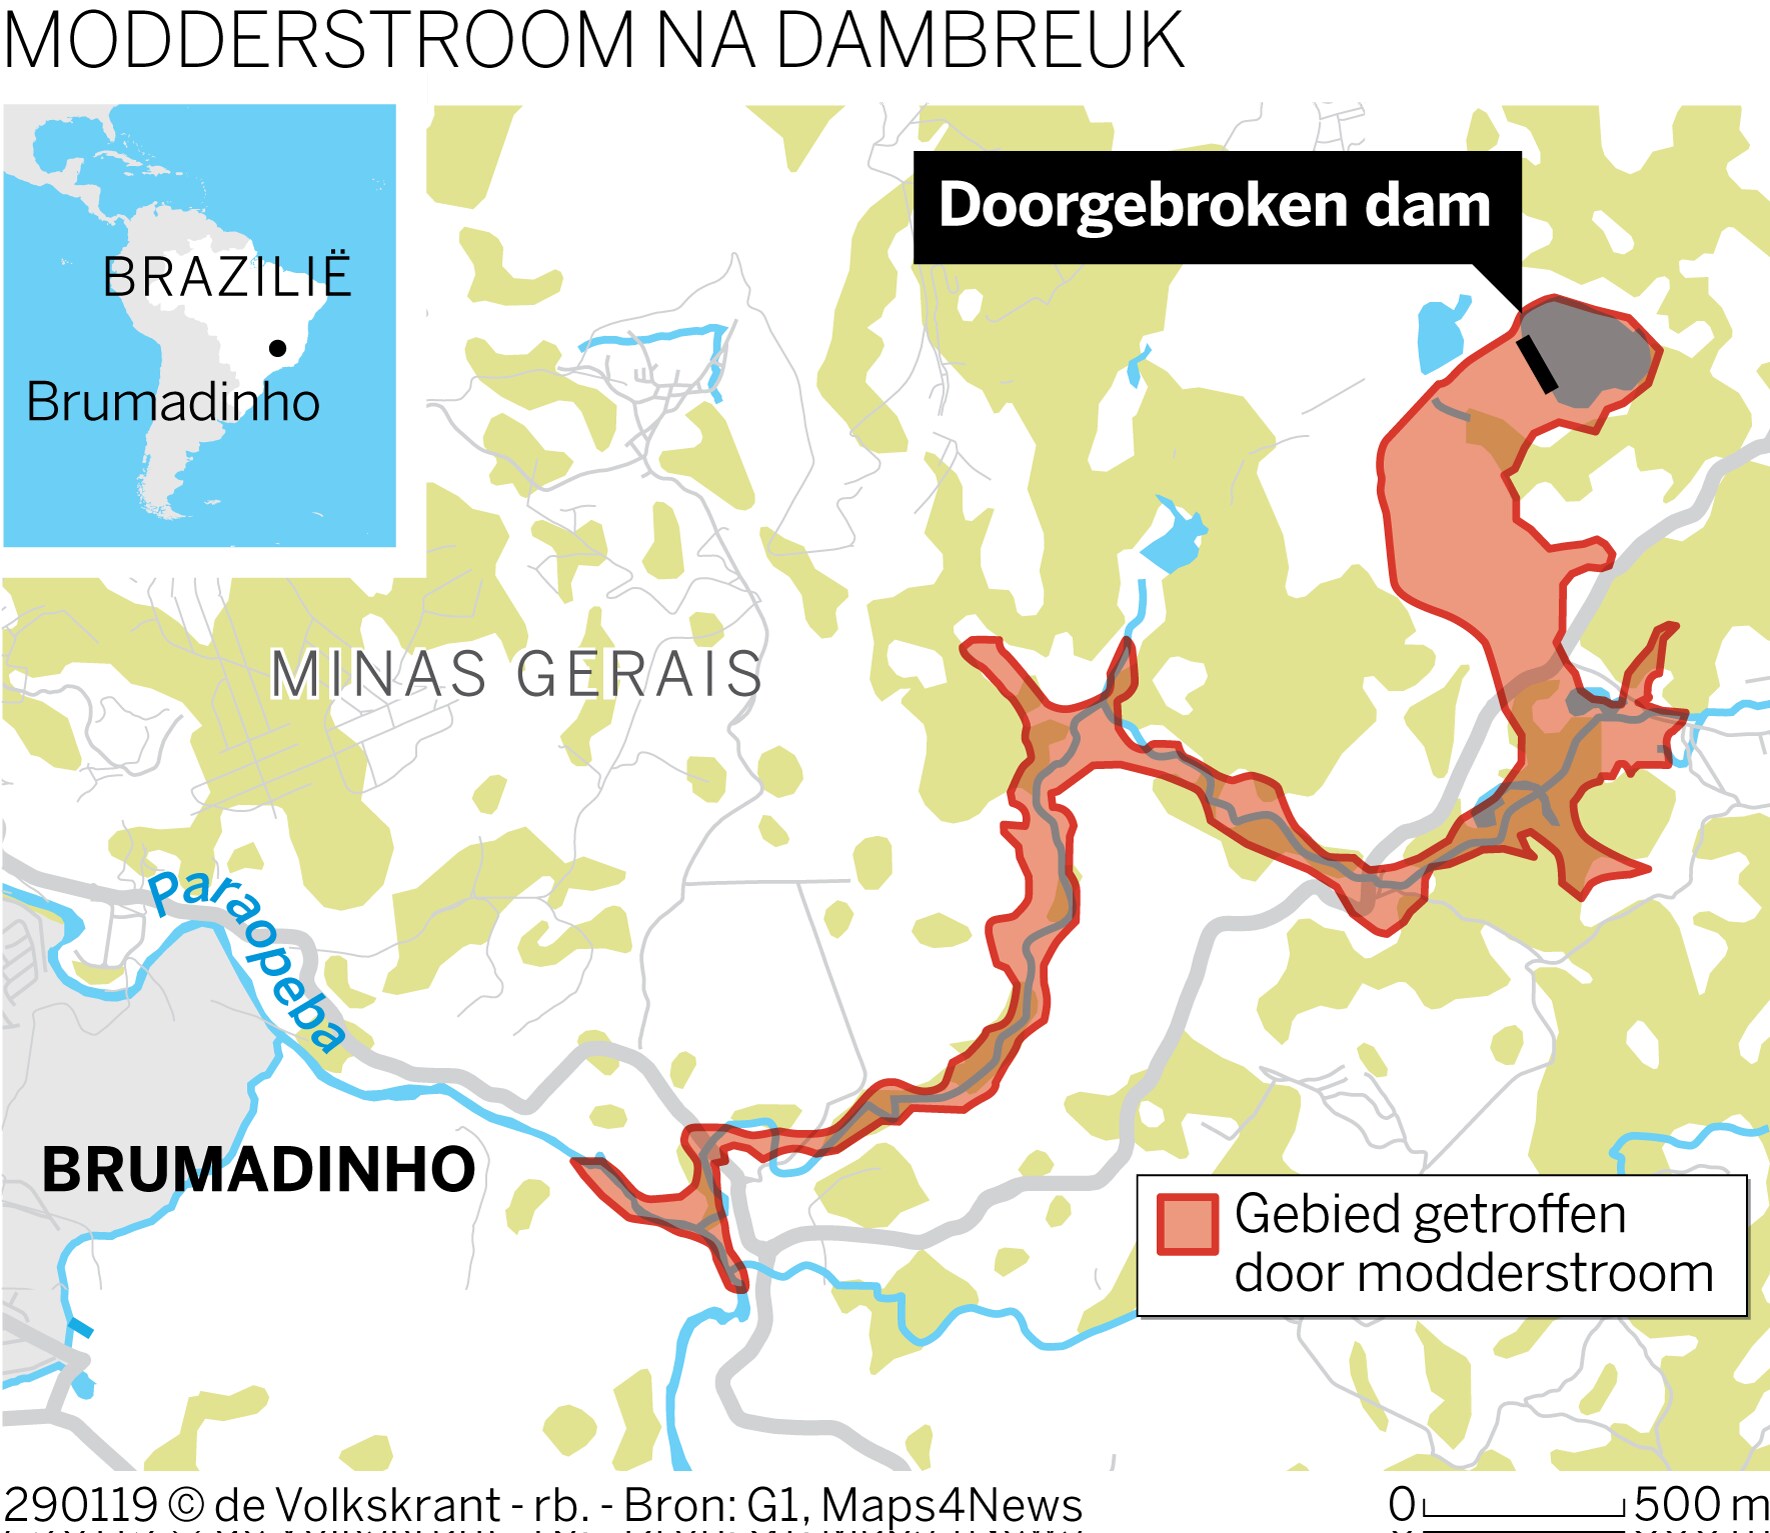 Vier vragen over de dambreuk in Brazilië – nam mijnbouwconcern Vale een loopje met de veiligheid?